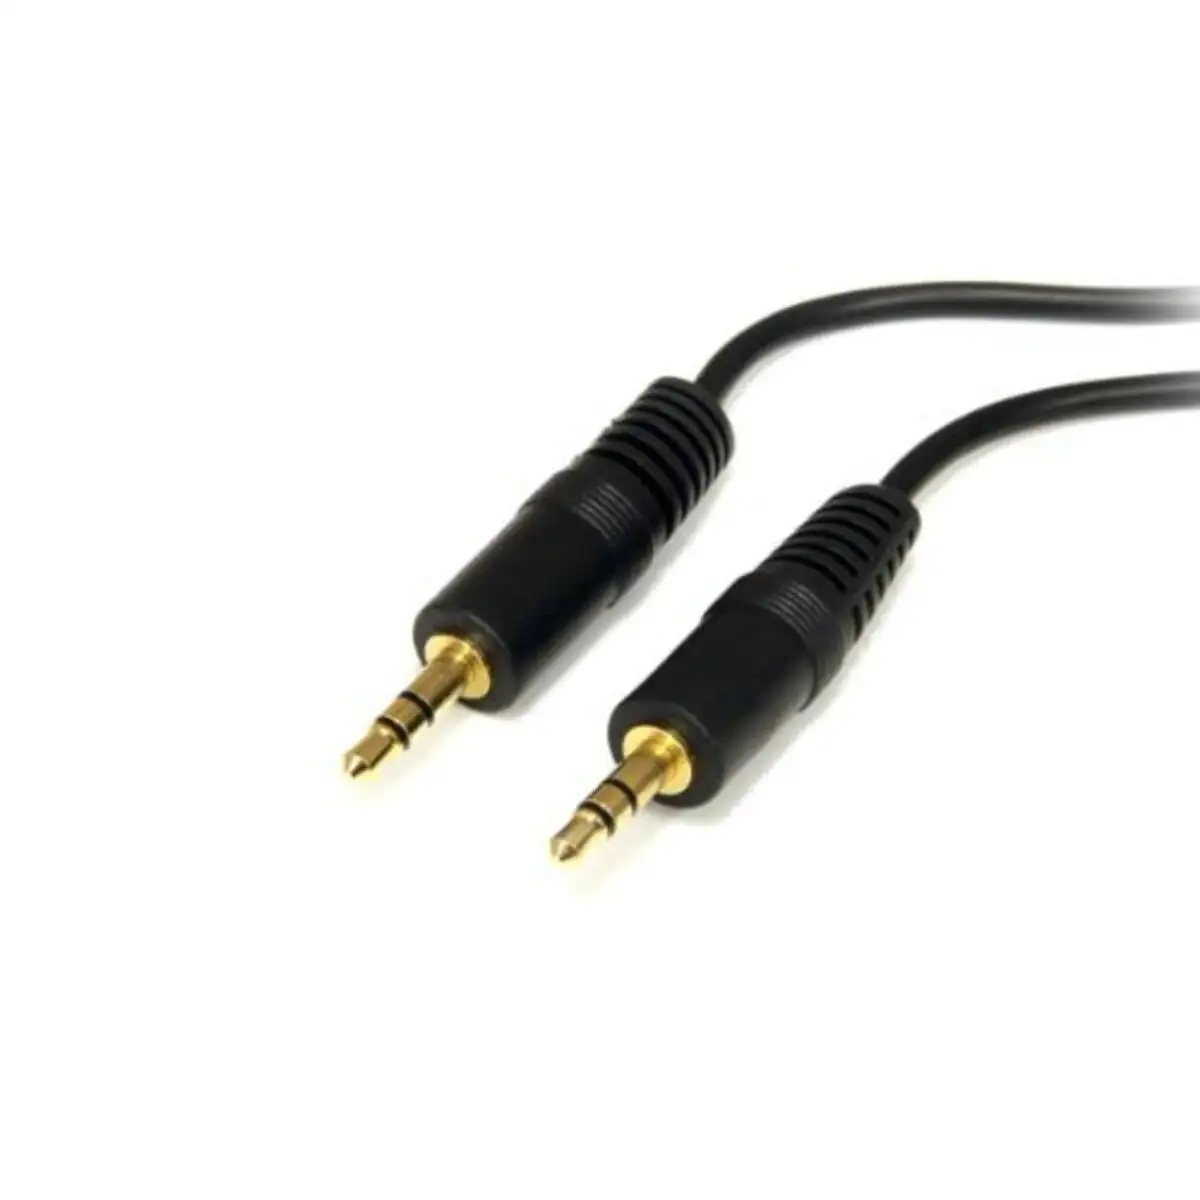 Cable audio jack 3 5 mm startech mu6mm 1 8 m_8200. Bienvenue chez DIAYTAR SENEGAL - Où le Shopping Rencontre la Qualité. Explorez notre sélection soigneusement conçue et trouvez des produits qui définissent le luxe abordable.